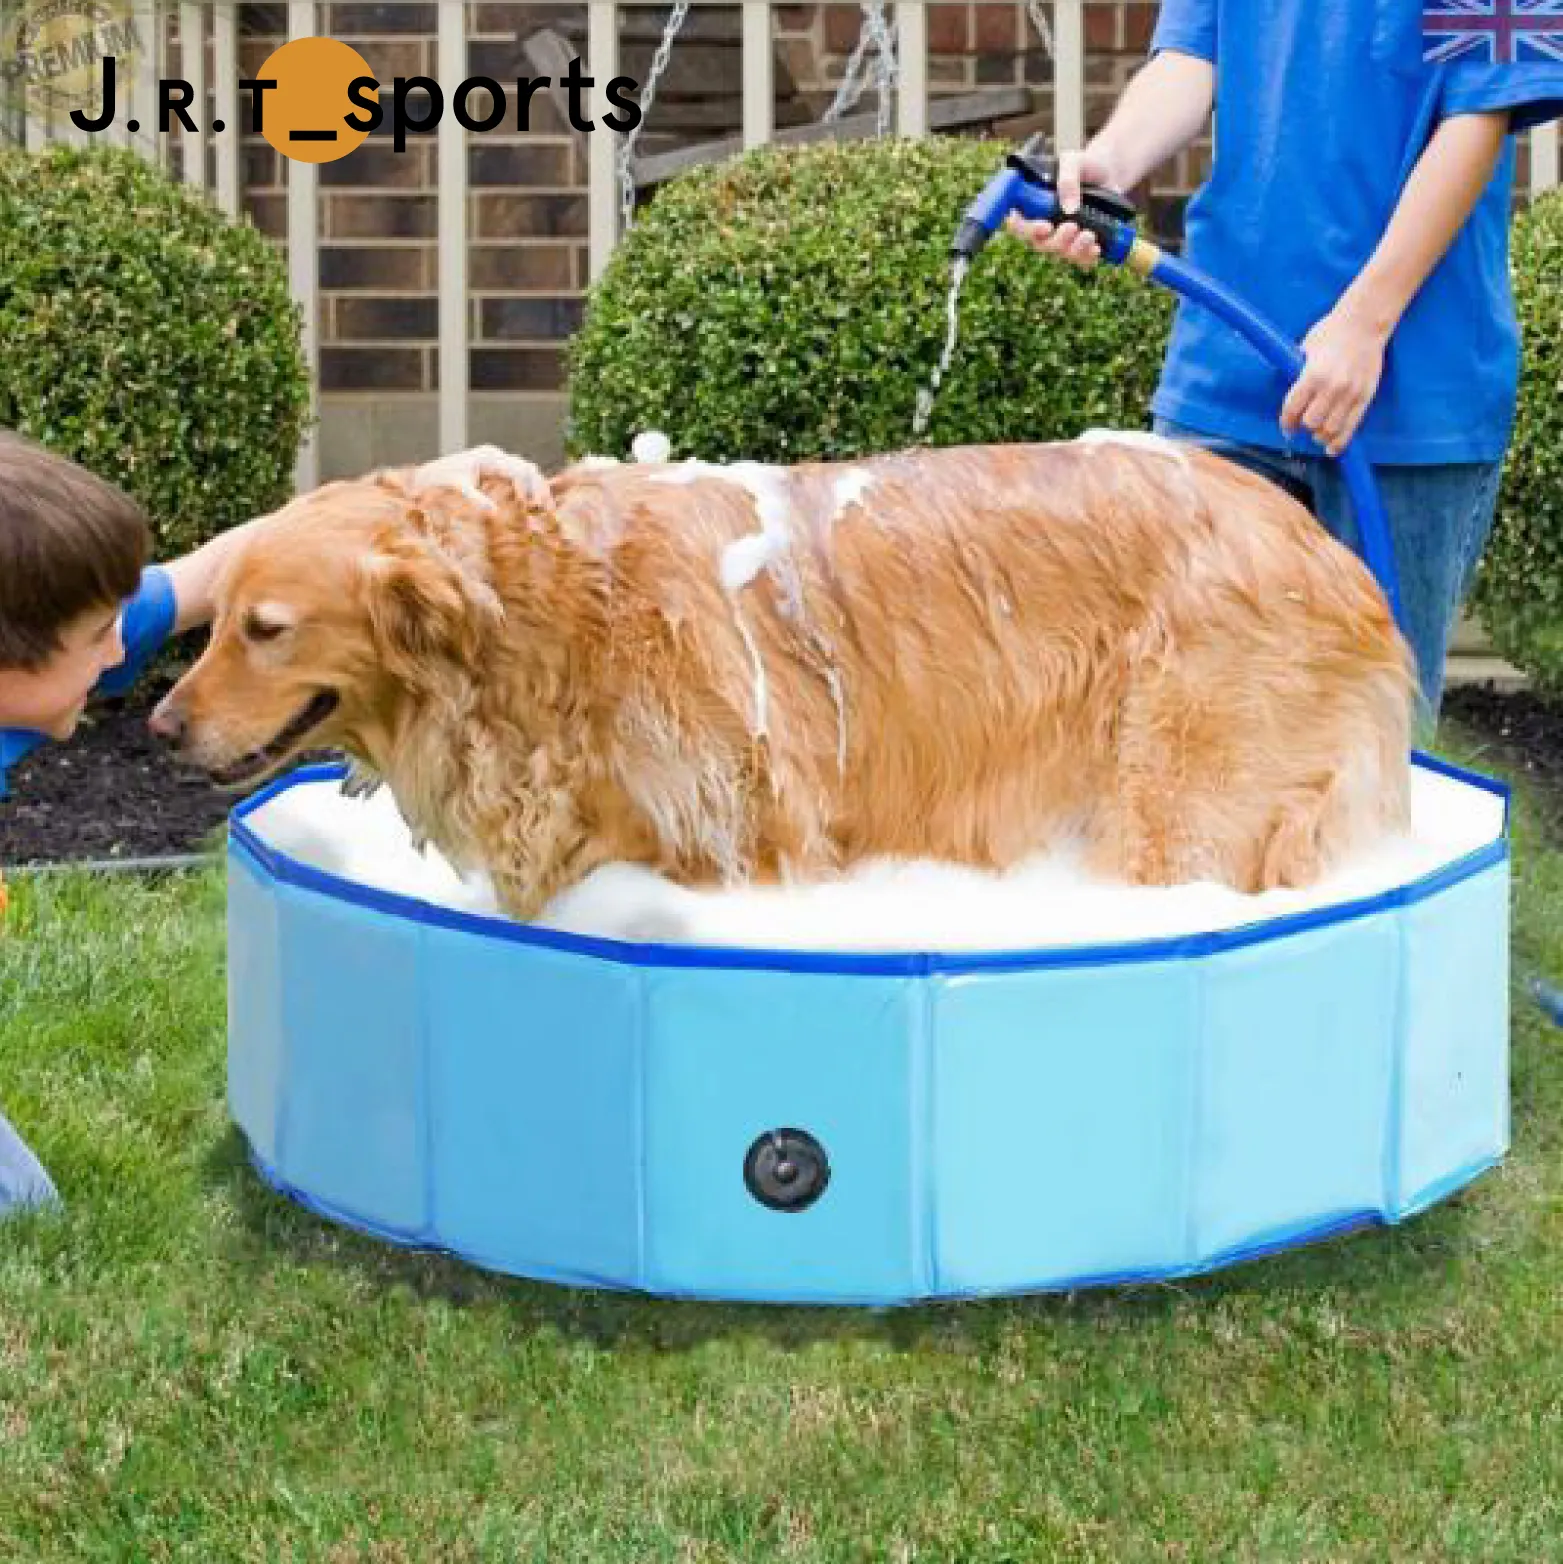 Piscina plegable con salpicaduras para mascotas, bañera de baño plegable para perros, gatos y niños